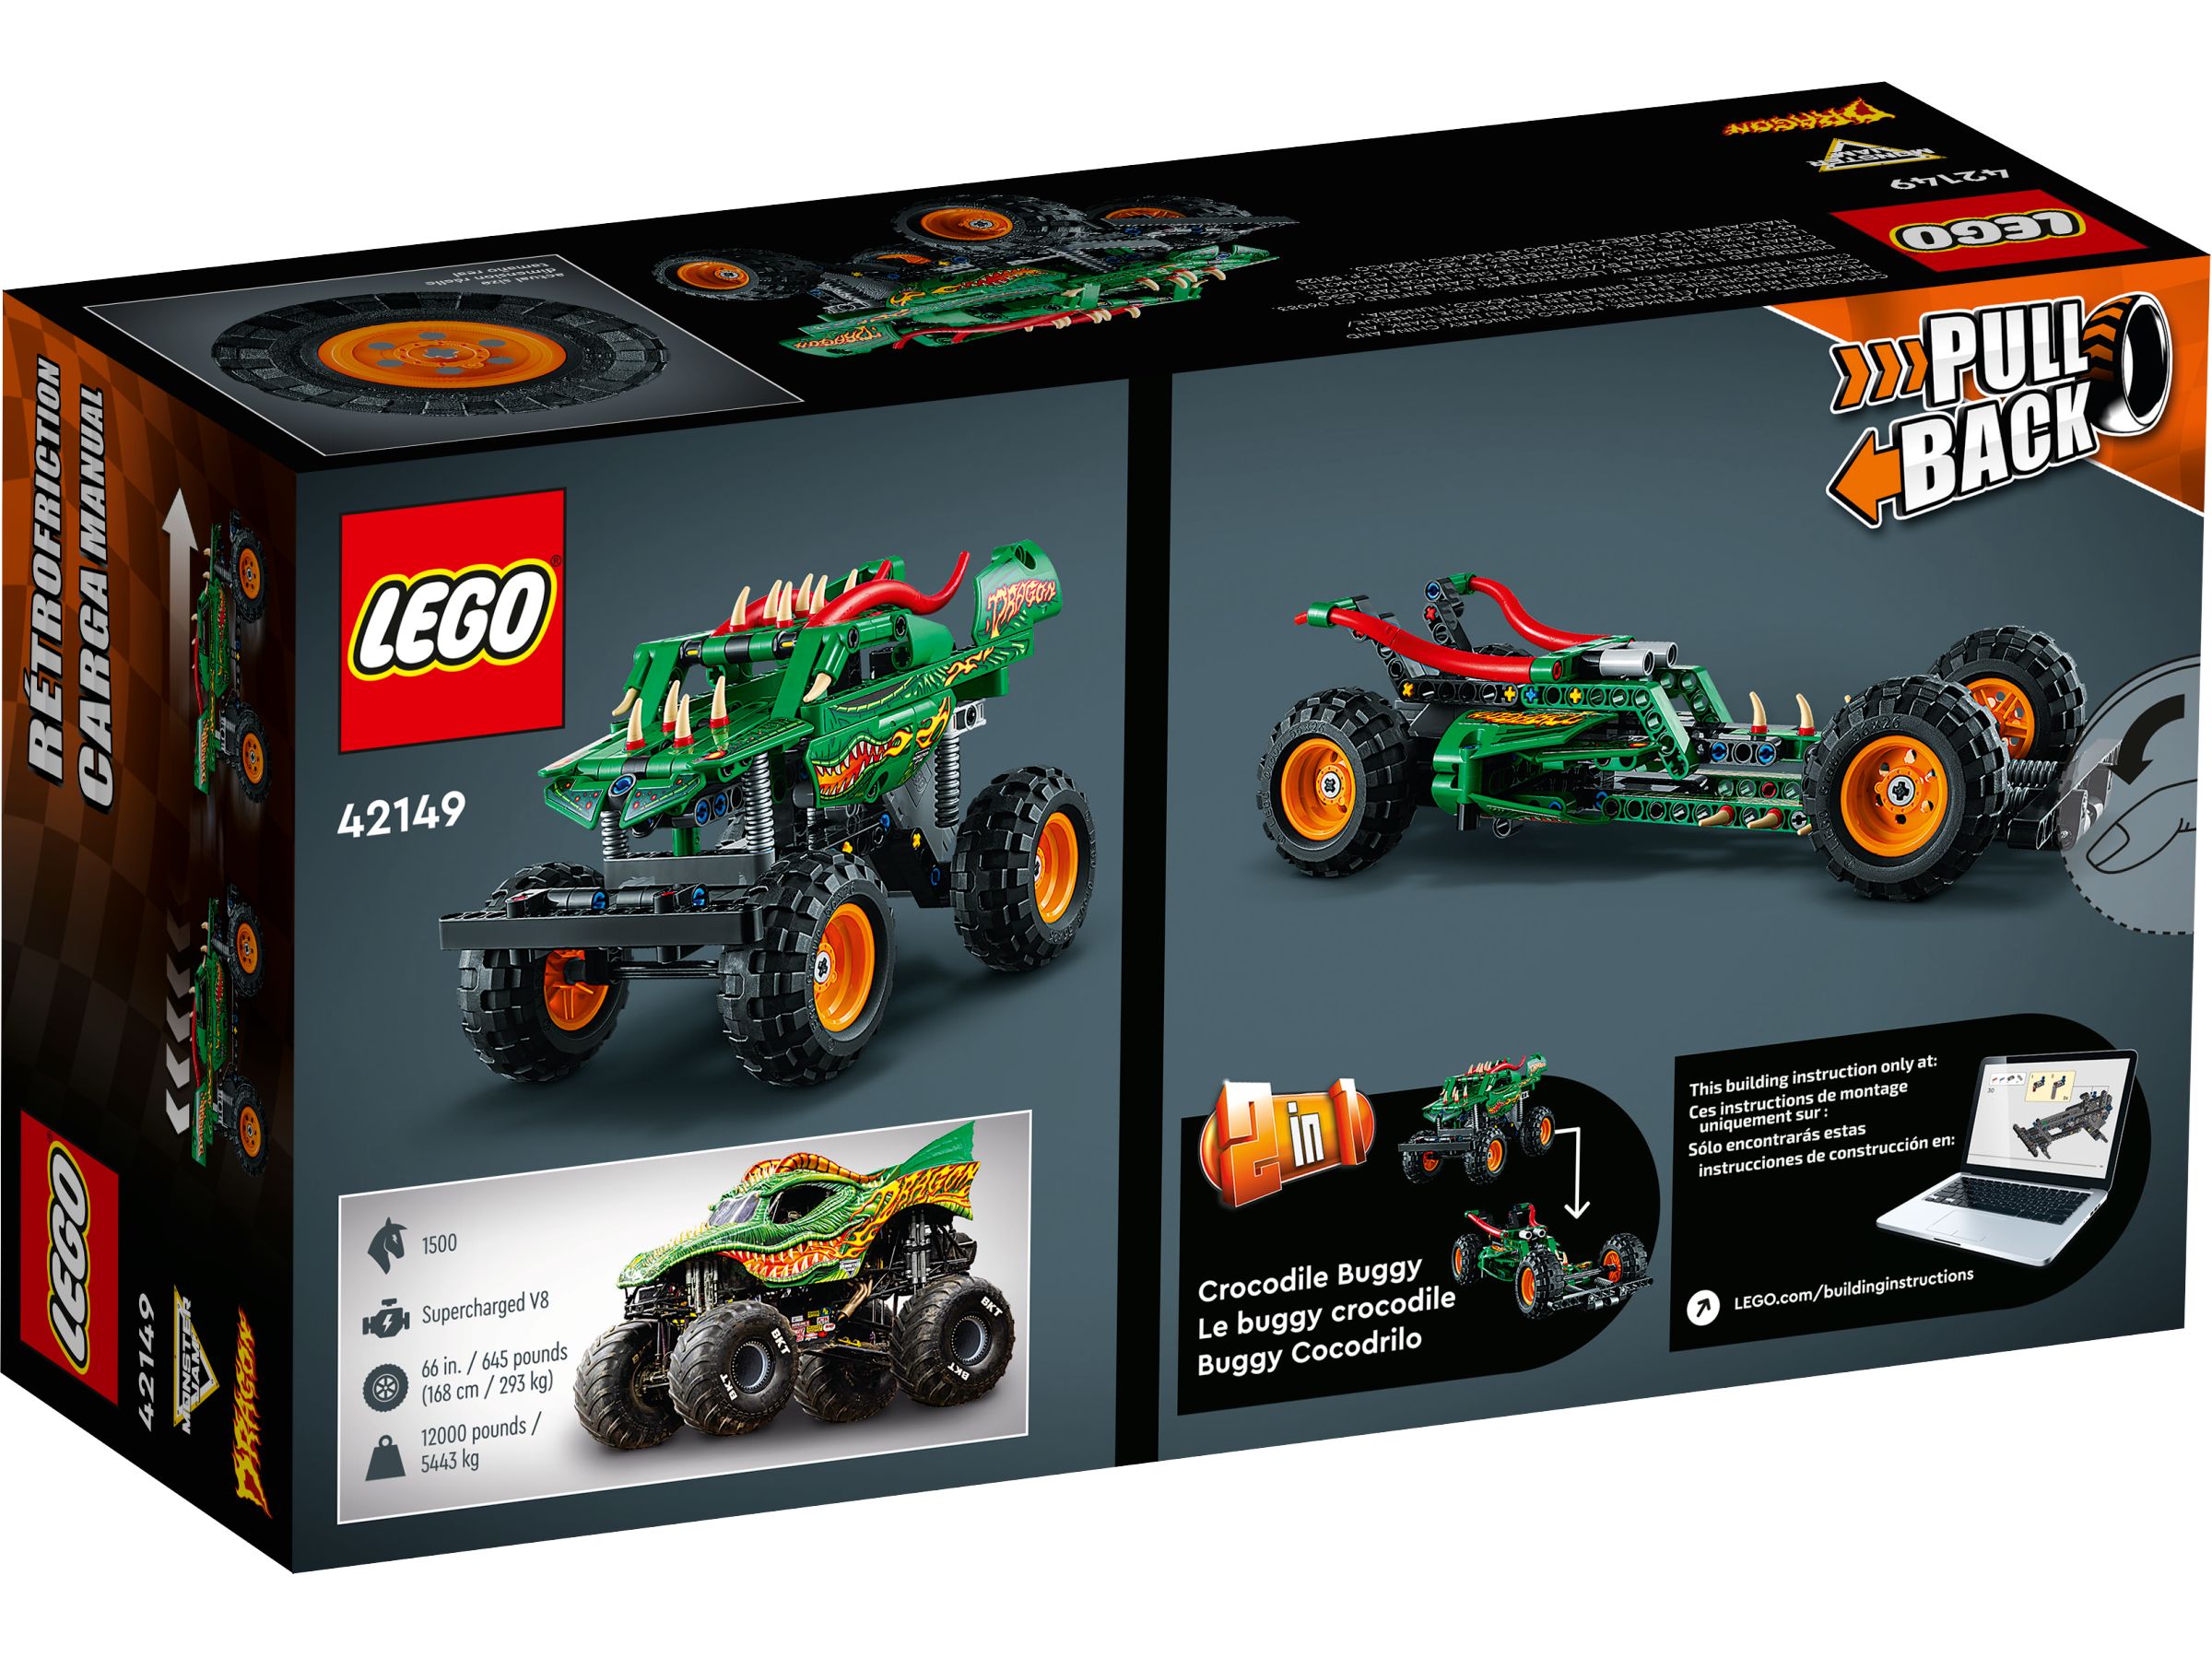 LEGO Technic 42149 Monster Jam™ Dragon™ LEGO_42149_alt5.jpg